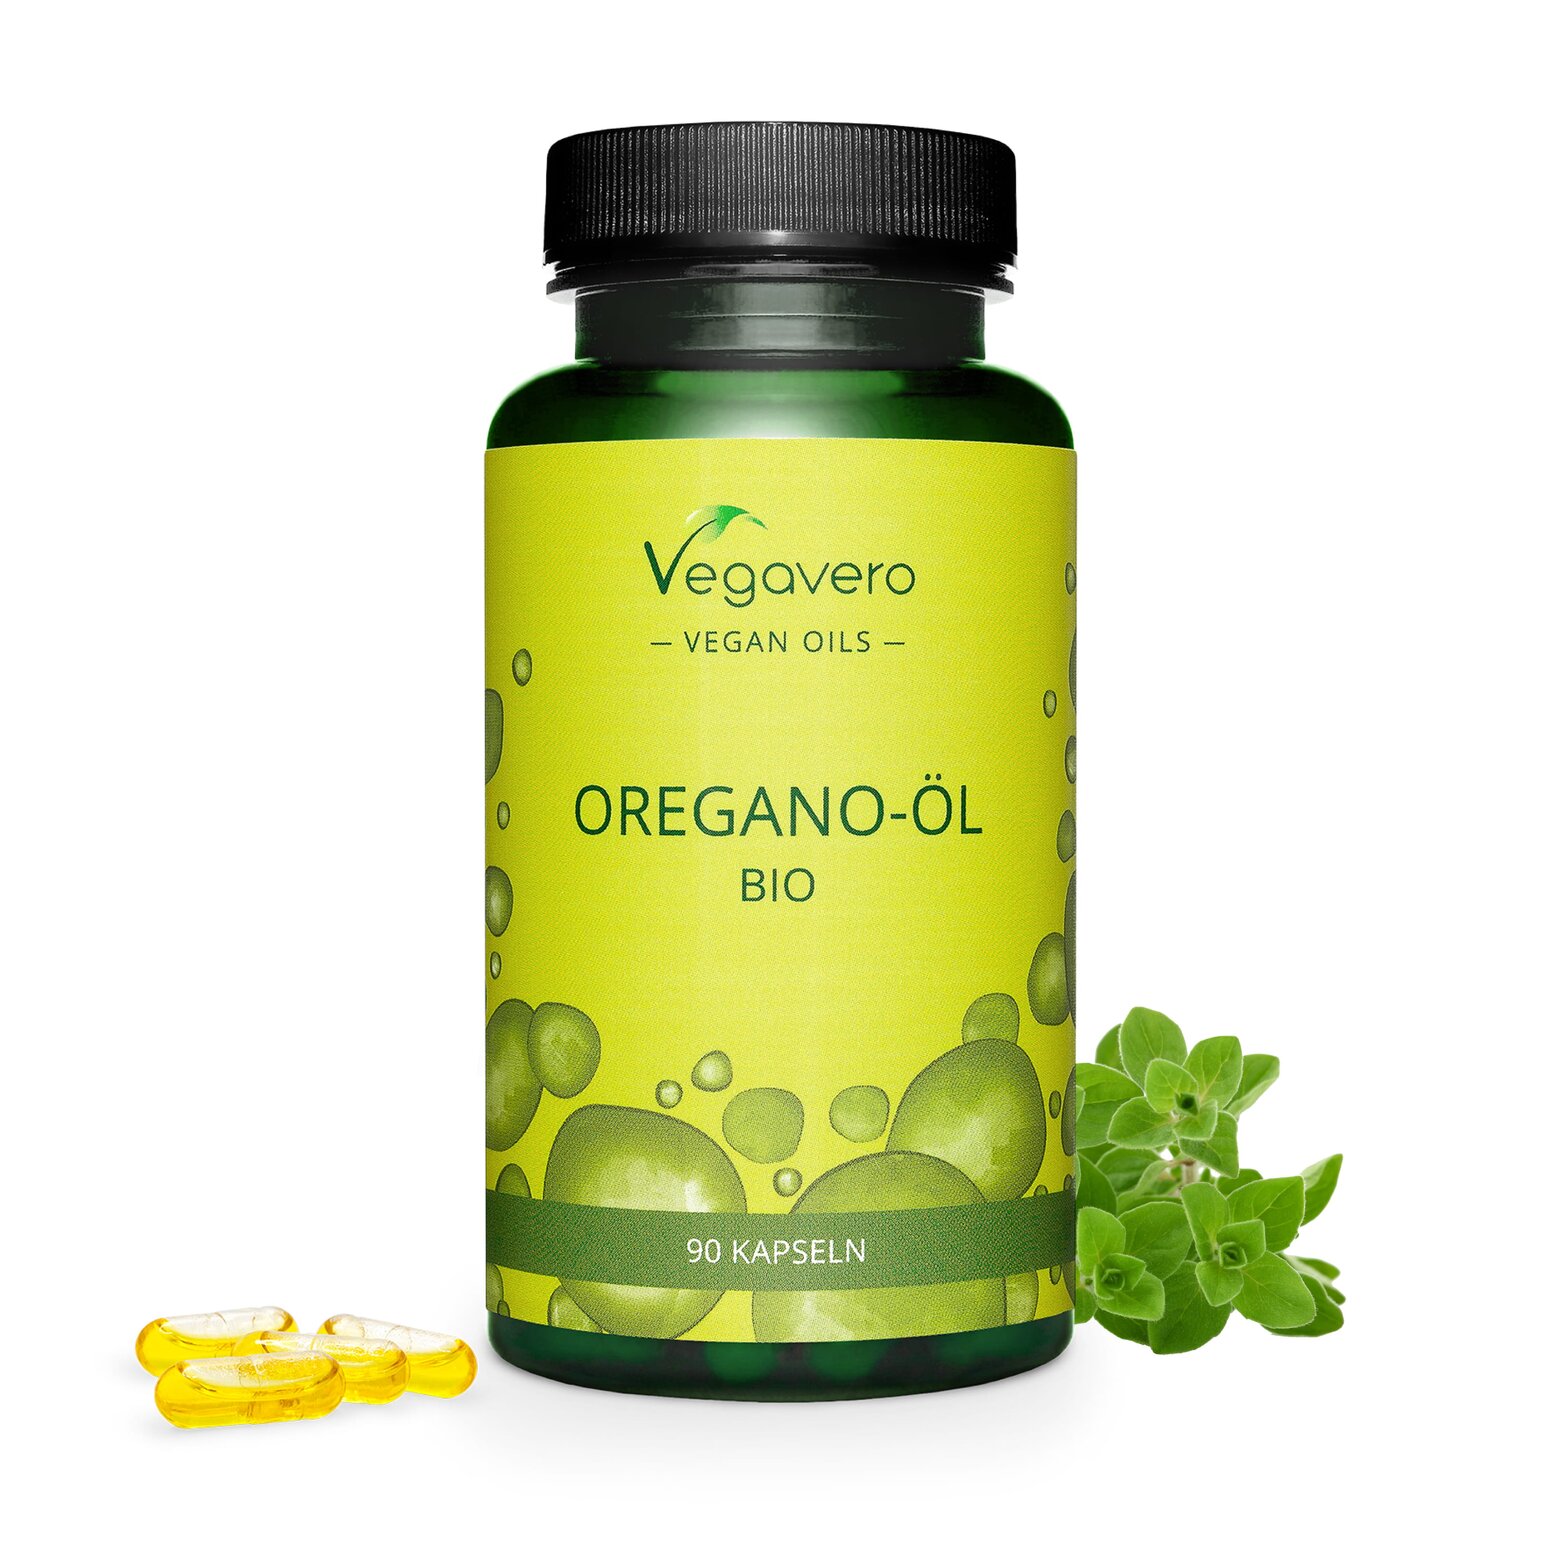 Vegavero Oregano-Öl Bio | 90 Kapseln | mit 70% Carvacrol und 2,75% Thymol | vegan | hergestellt in Deutschland